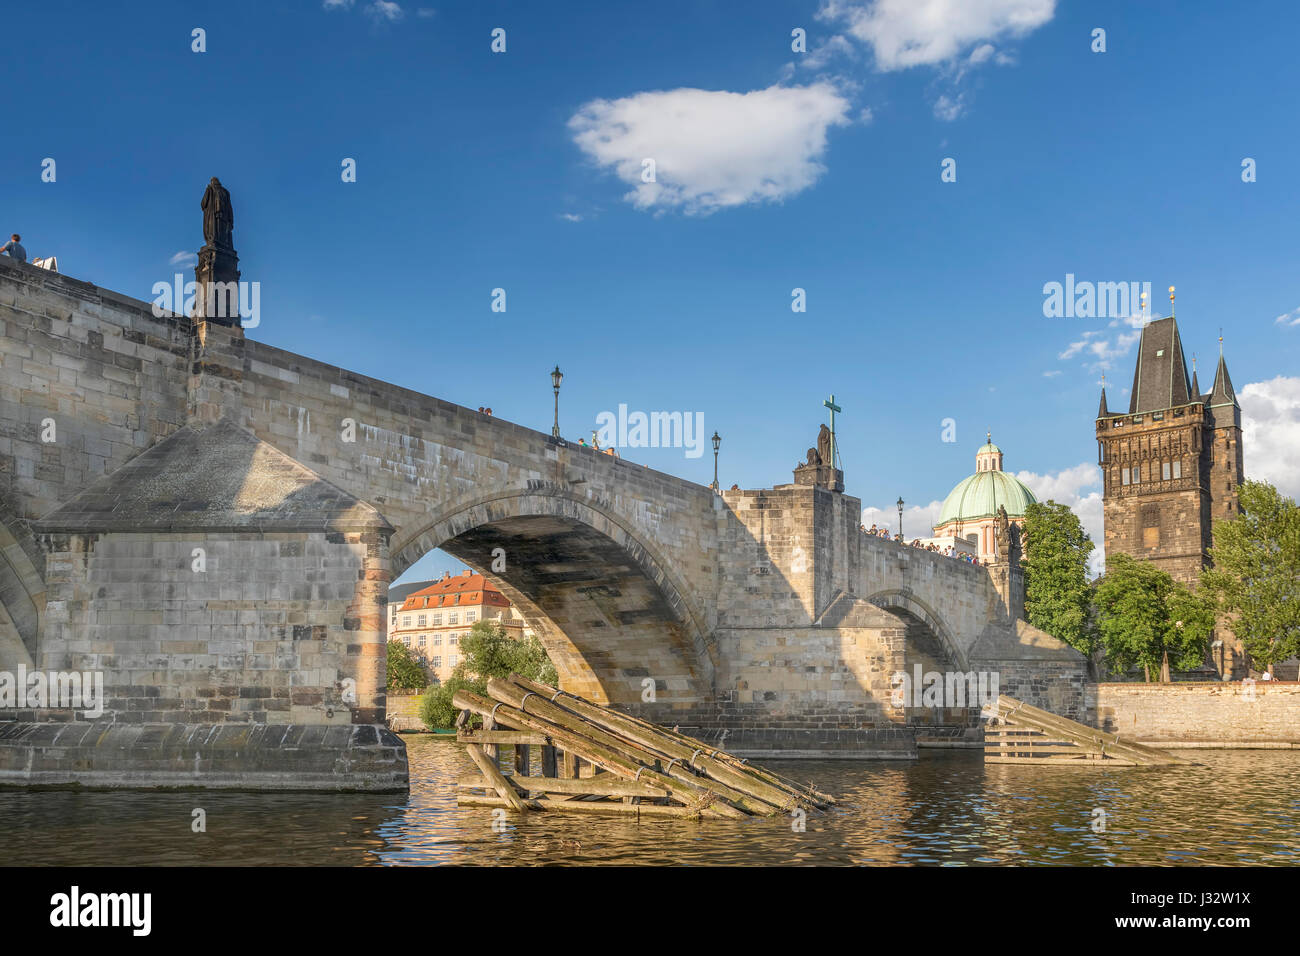 Prag, Tschechische Republik, 5. Juli 2016: die Karlsbrücke und der Altstädter Brückenturm, berühmte Sehenswürdigkeiten mit gotischen Architektur. Stockfoto